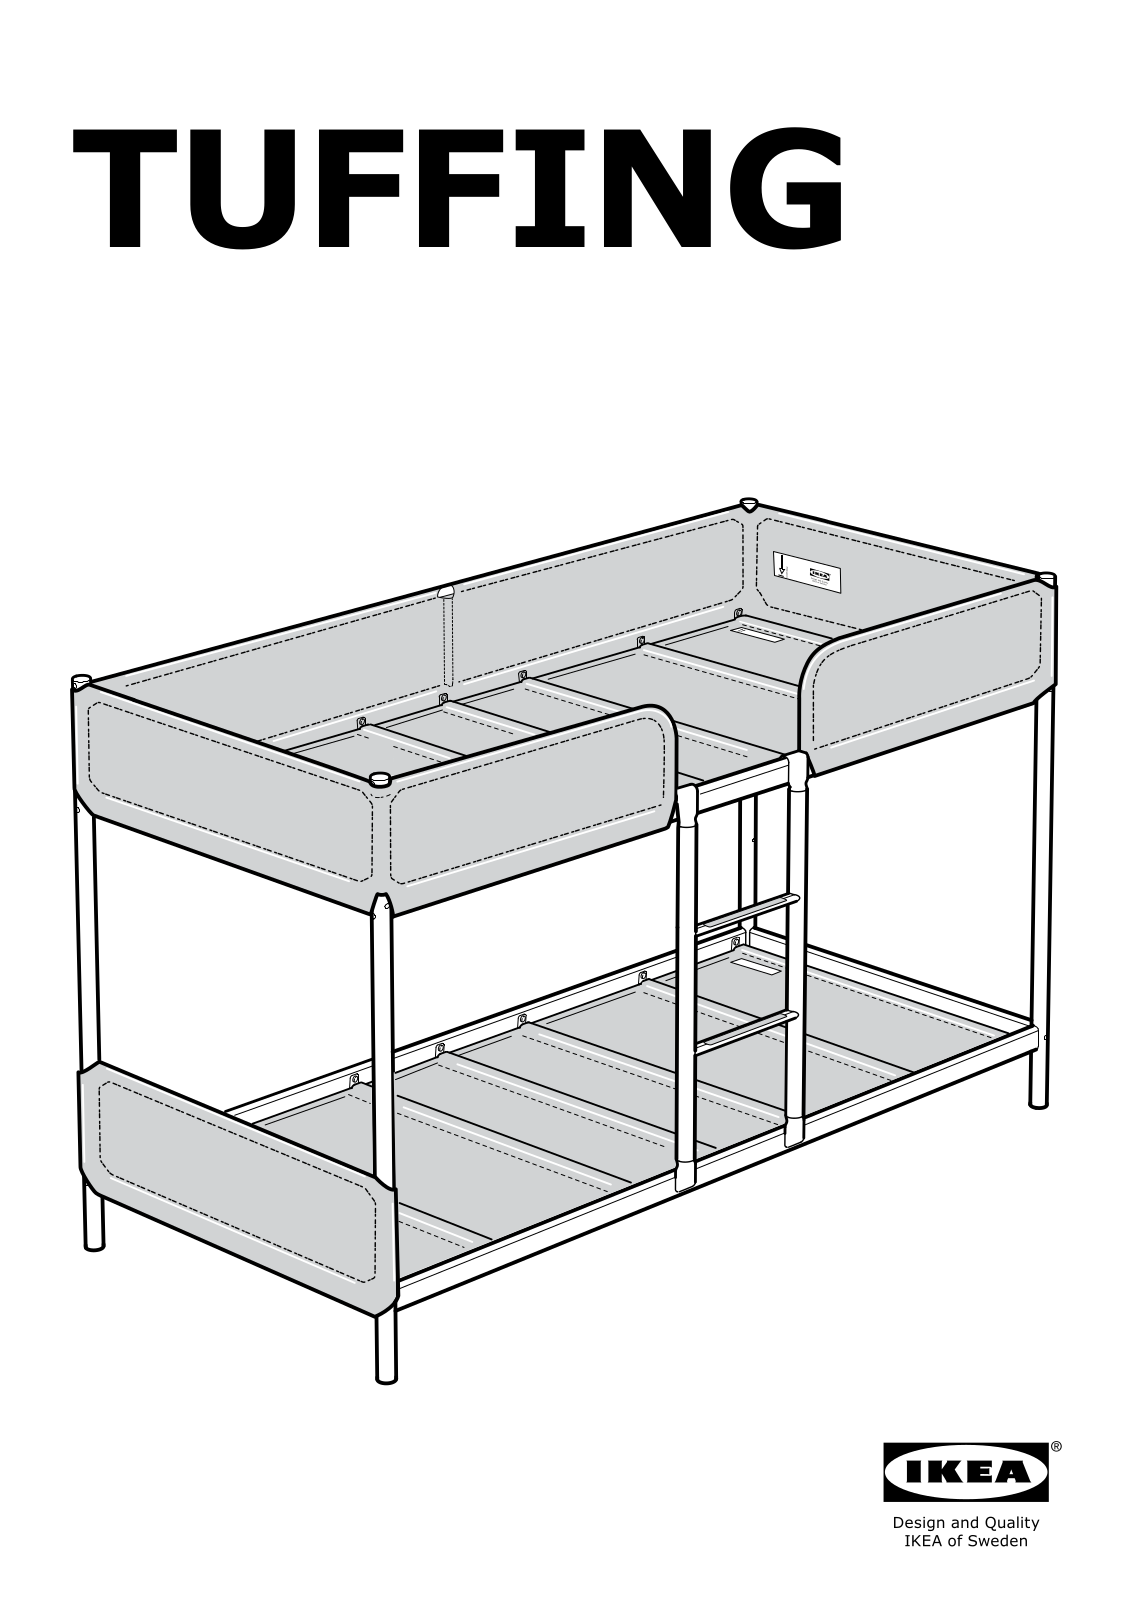 IKEA TUFFING User Manual